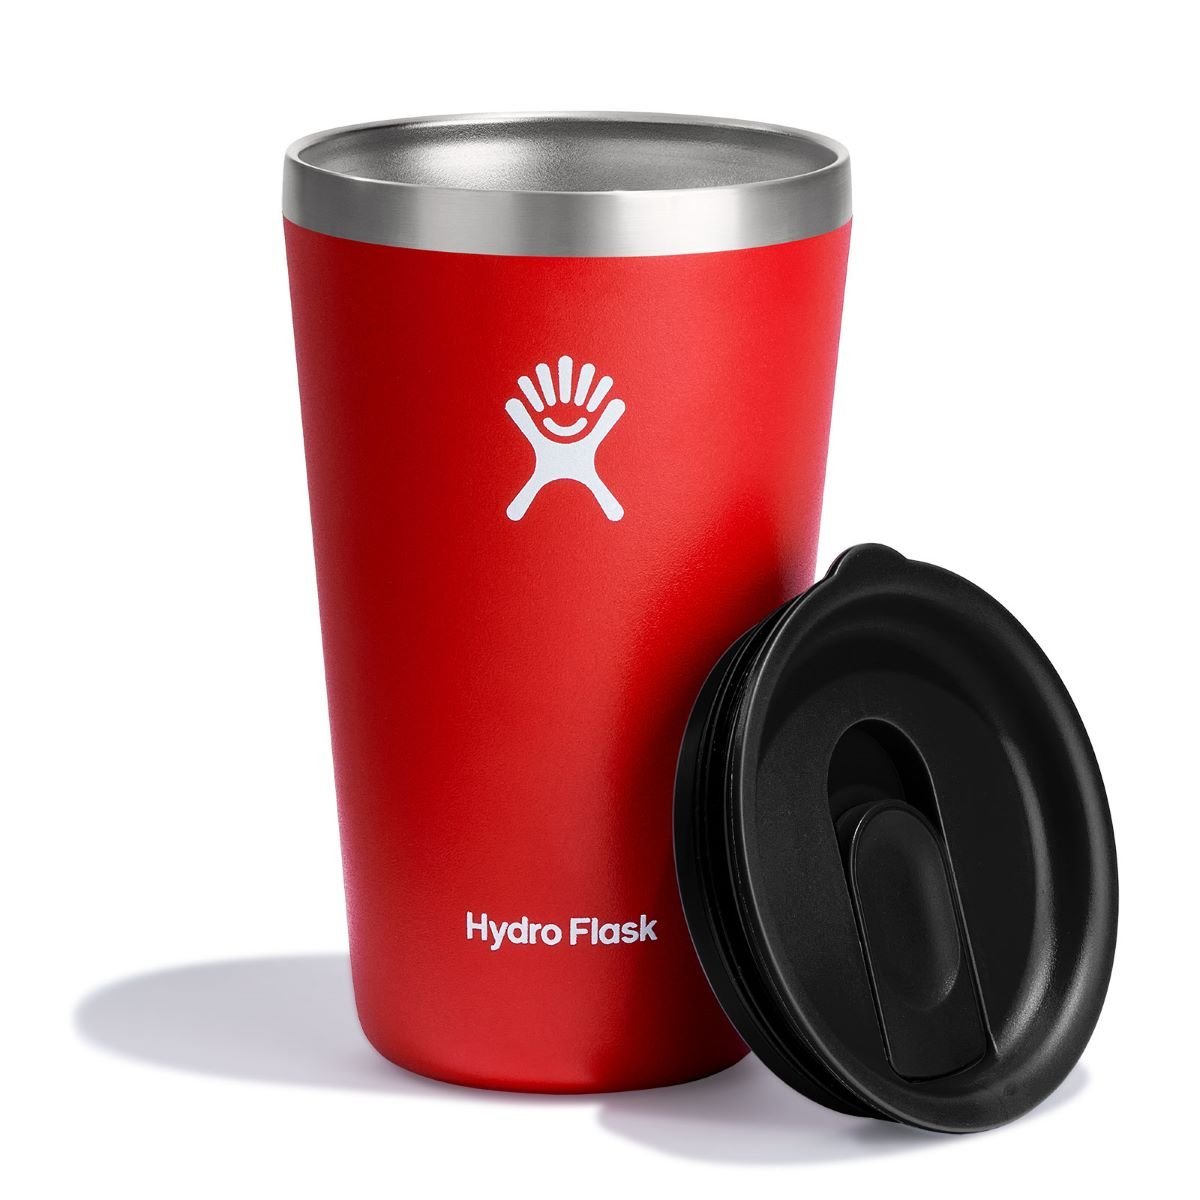 Termopohár Hydro Flask 16 oz (473 ml) All Around Tumbler - červená